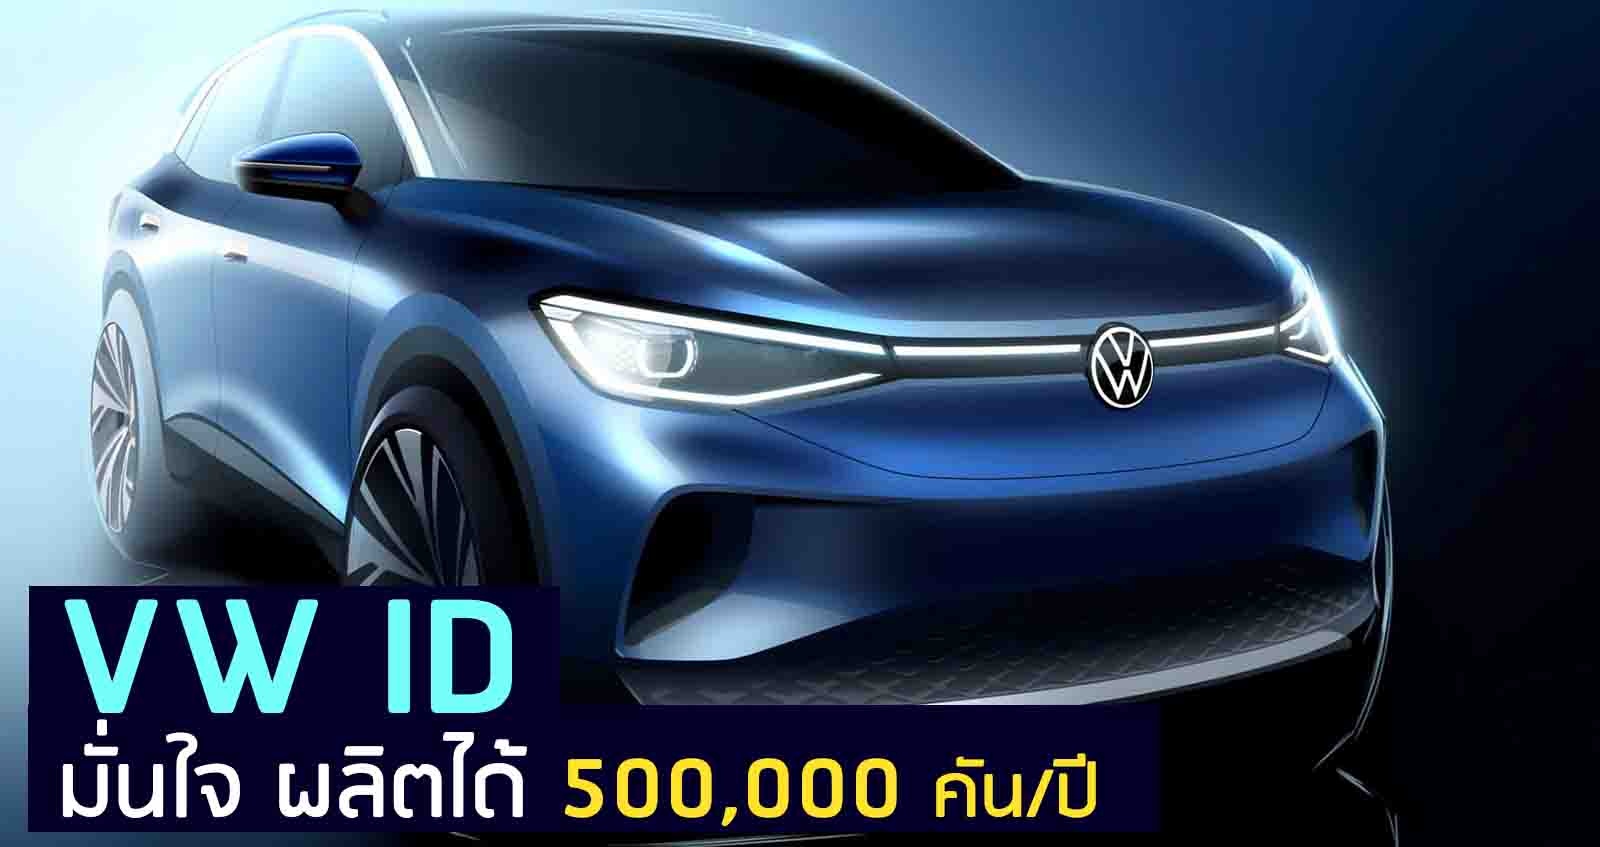 VW ID มั่นใจ ผลิตได้ 500,000 คันต่อปี ก่อนเปิดตัว 23 กันยายนนี้